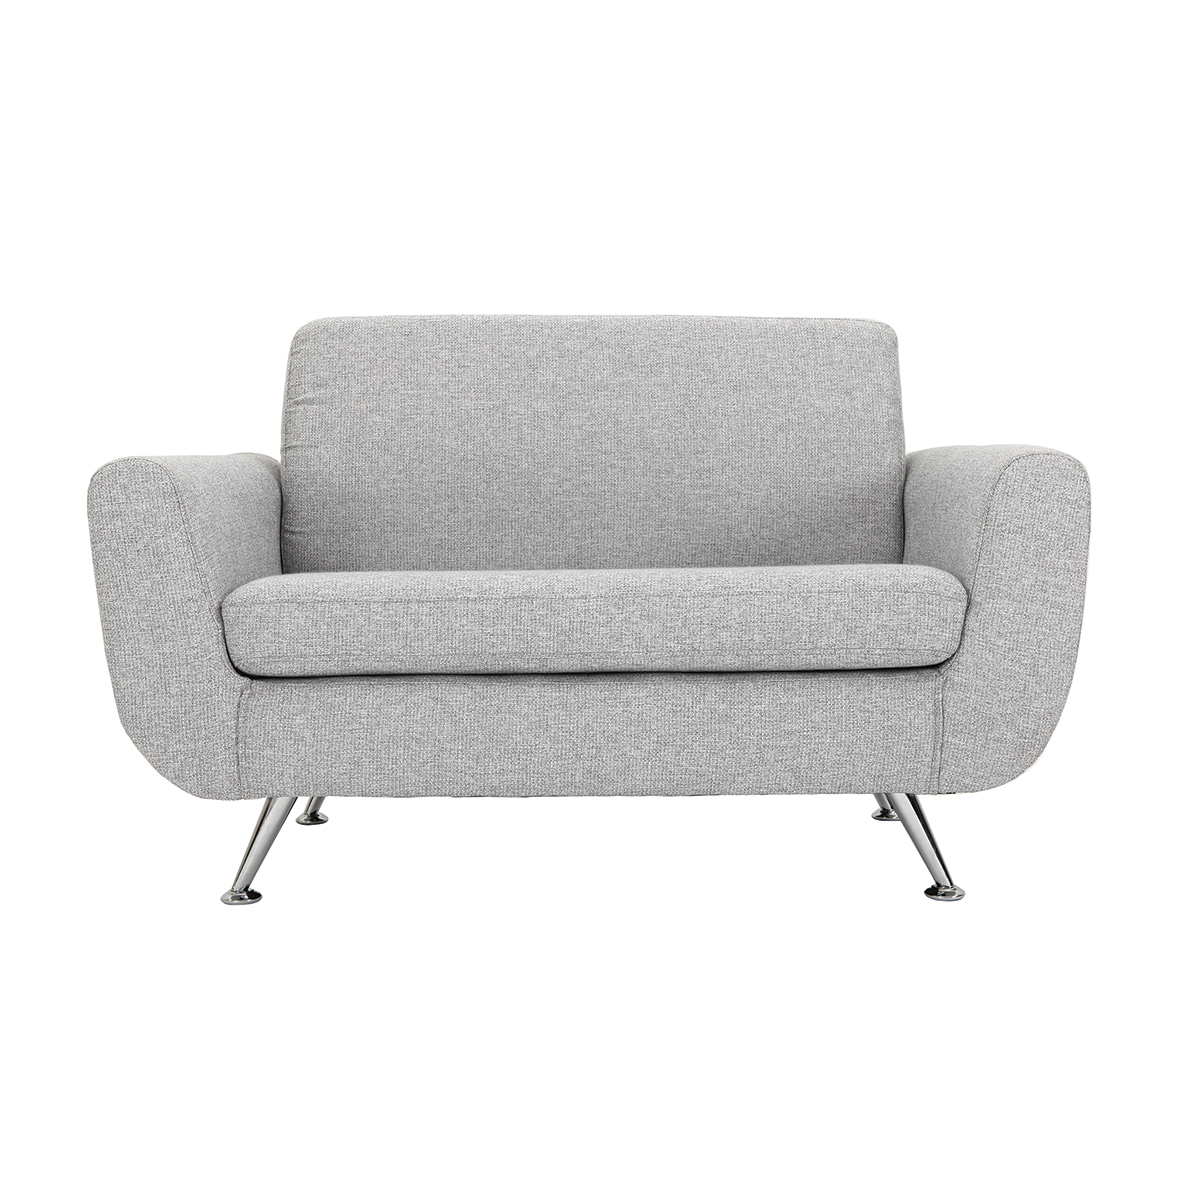 Canapé design 2 places en tissu gris clair et acier chromé PURE vue1